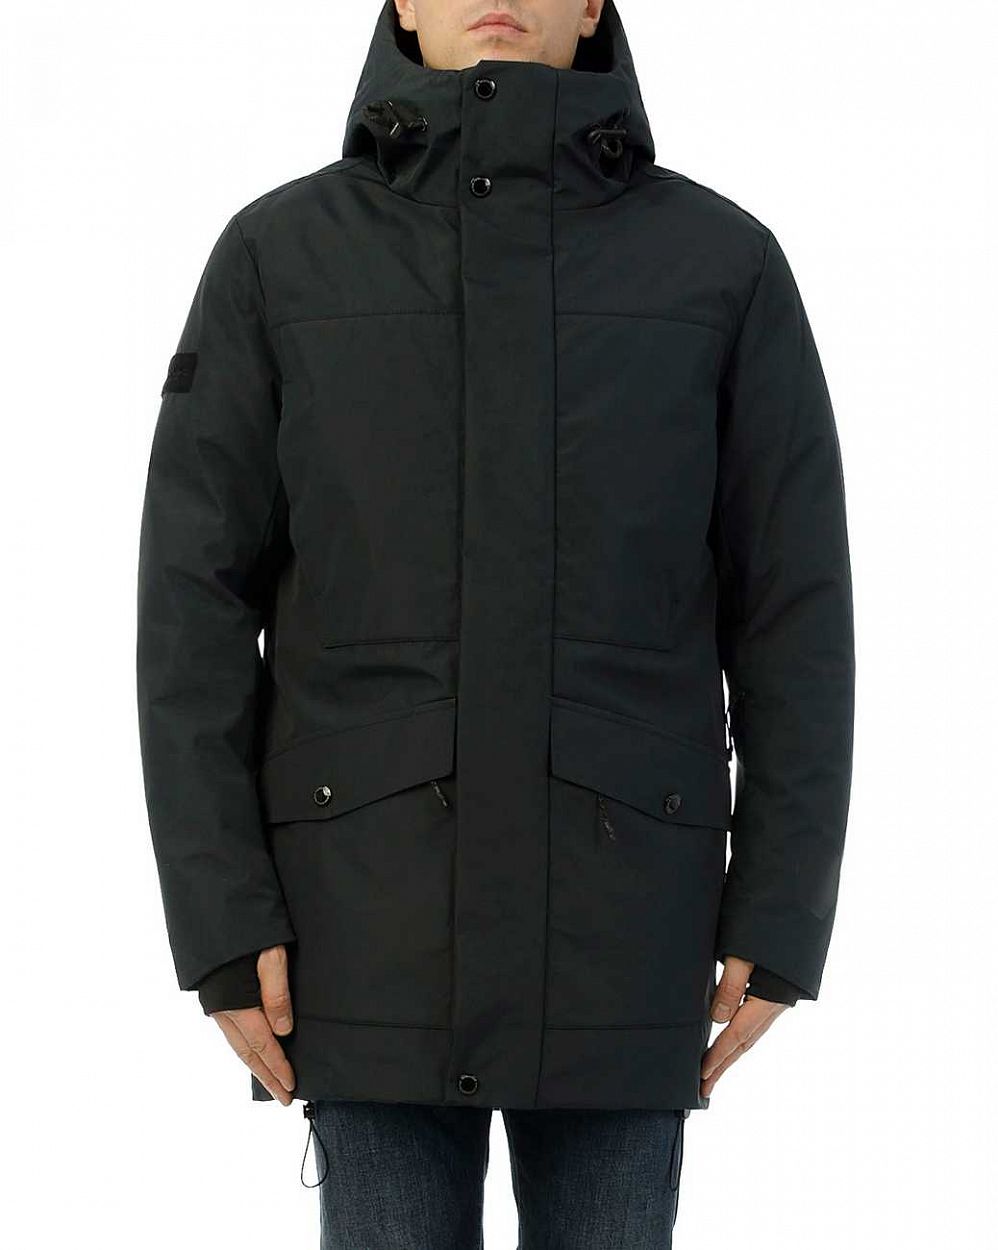 Куртка мужская зимняя водонепроницаемая на мембране Loading Reloaded 183 Blue Graphit отзывы